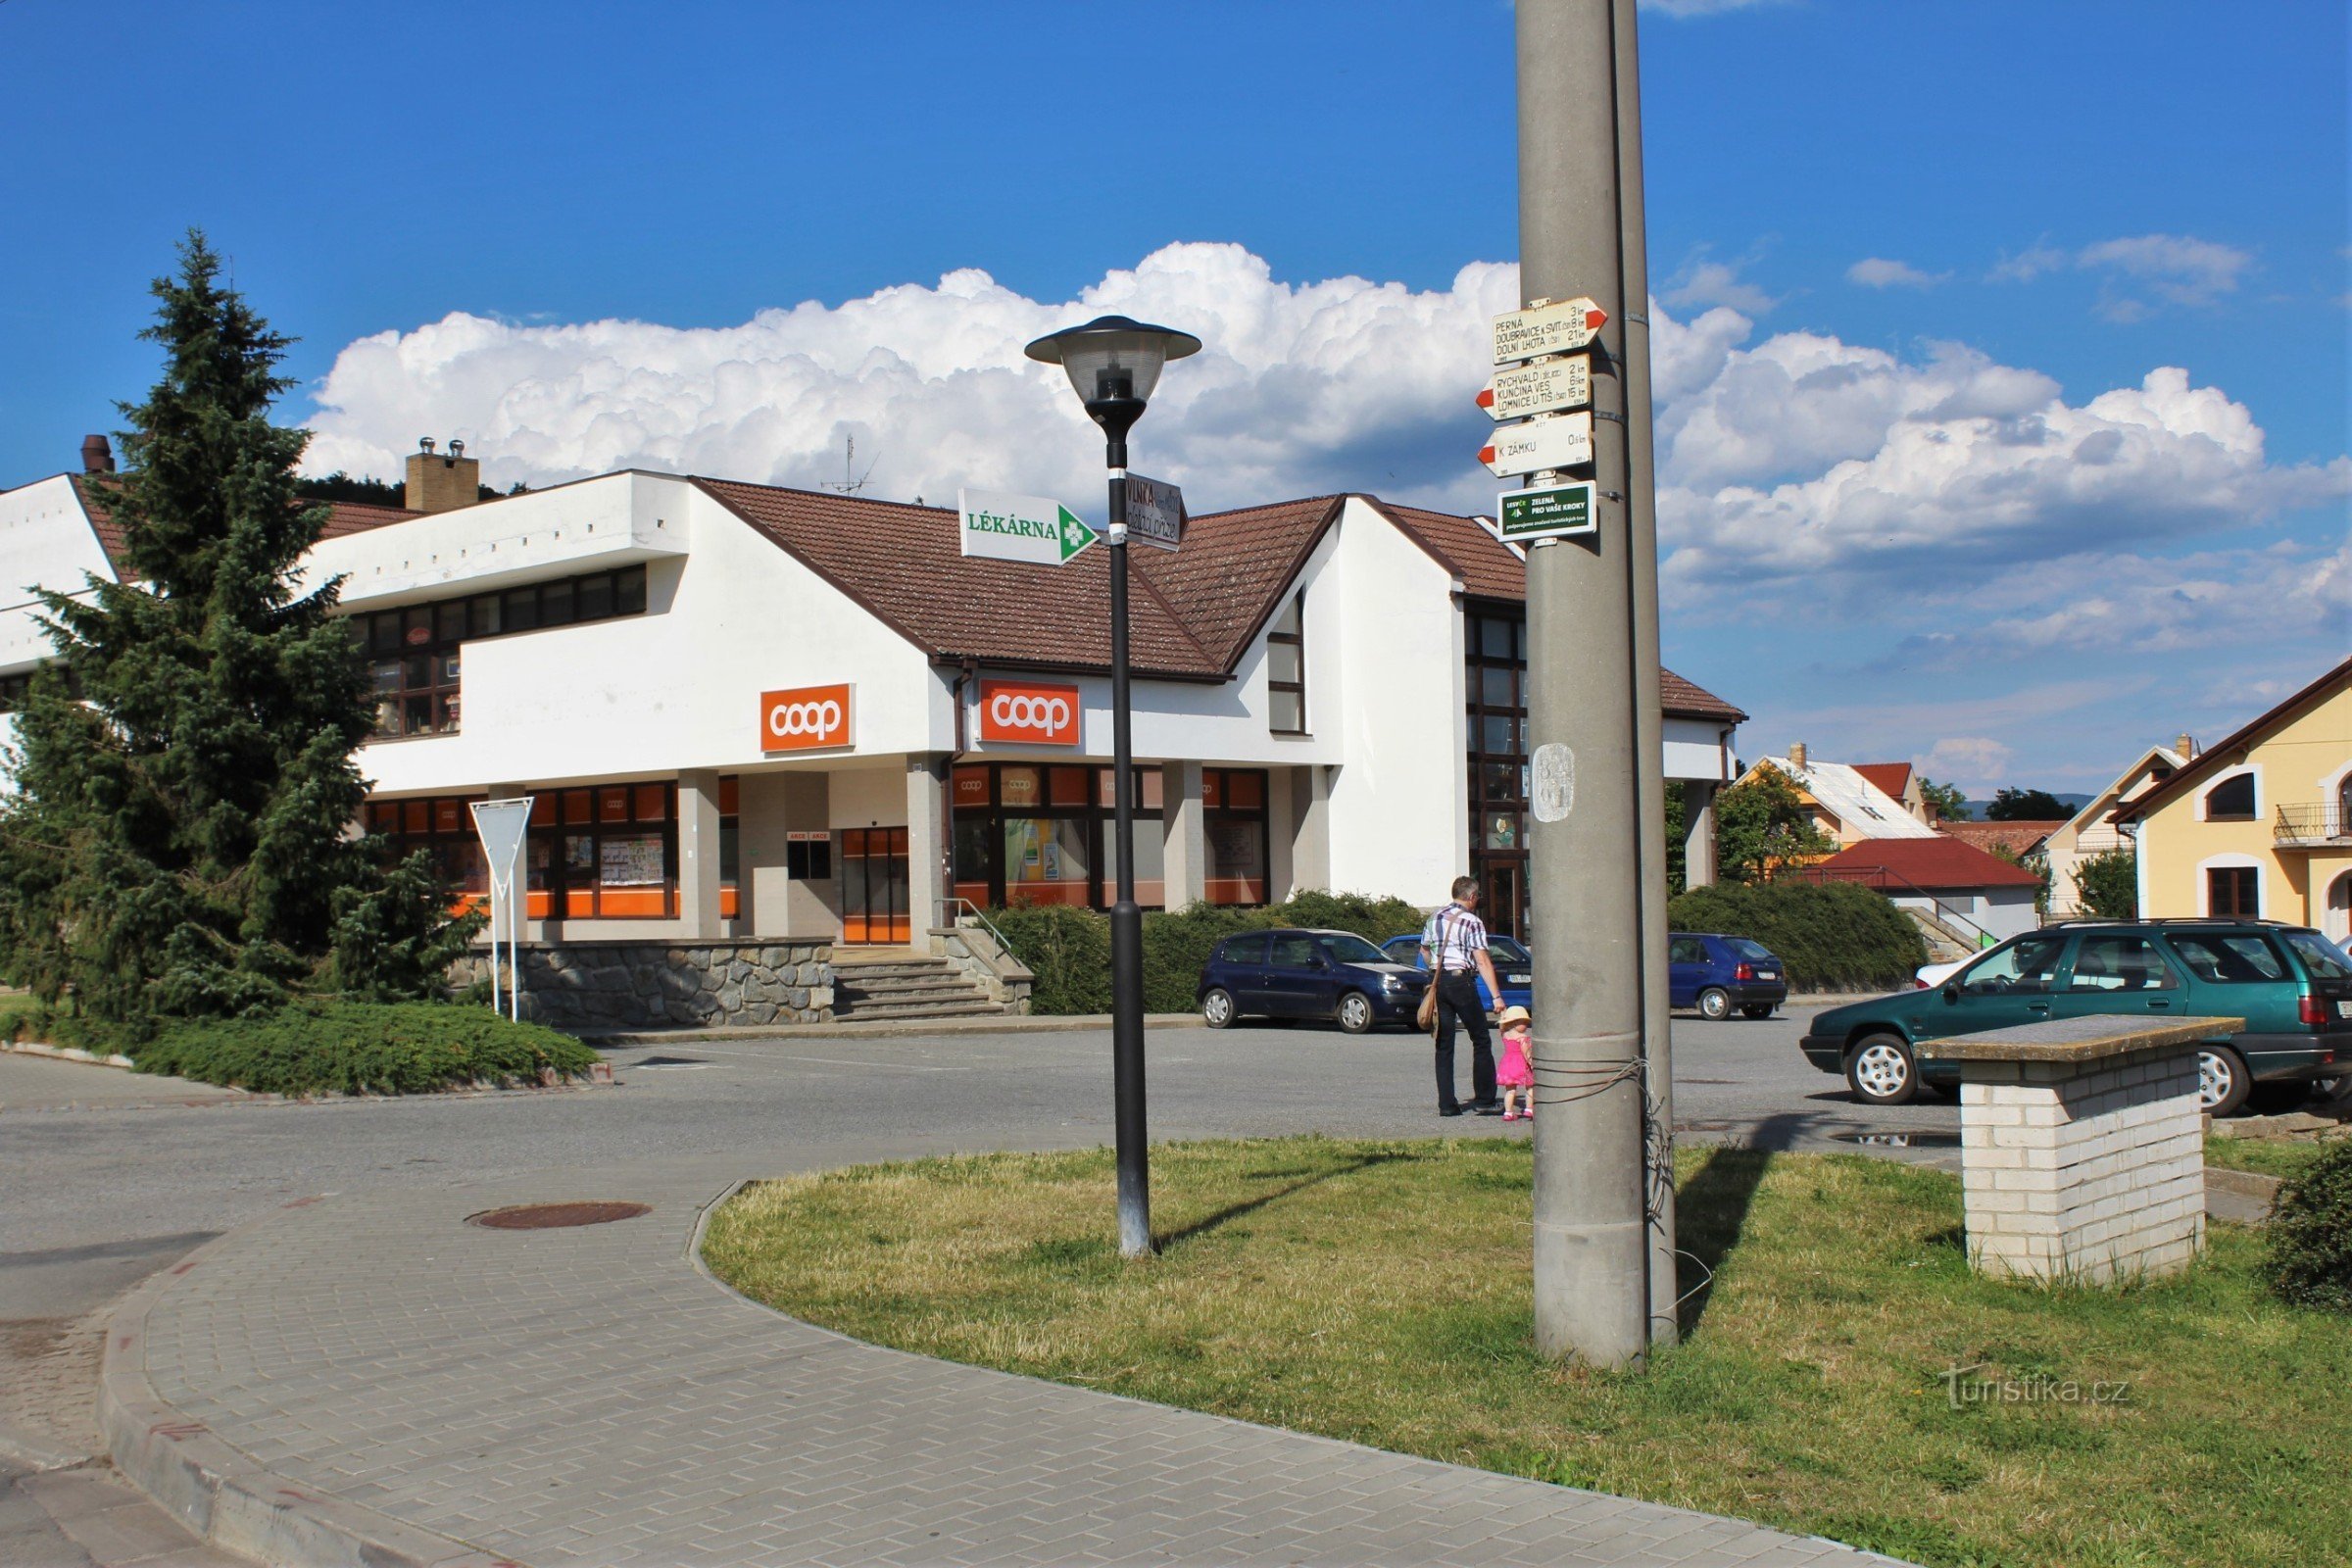 Rozdroże turystyczne znajduje się na Comenské náměstí